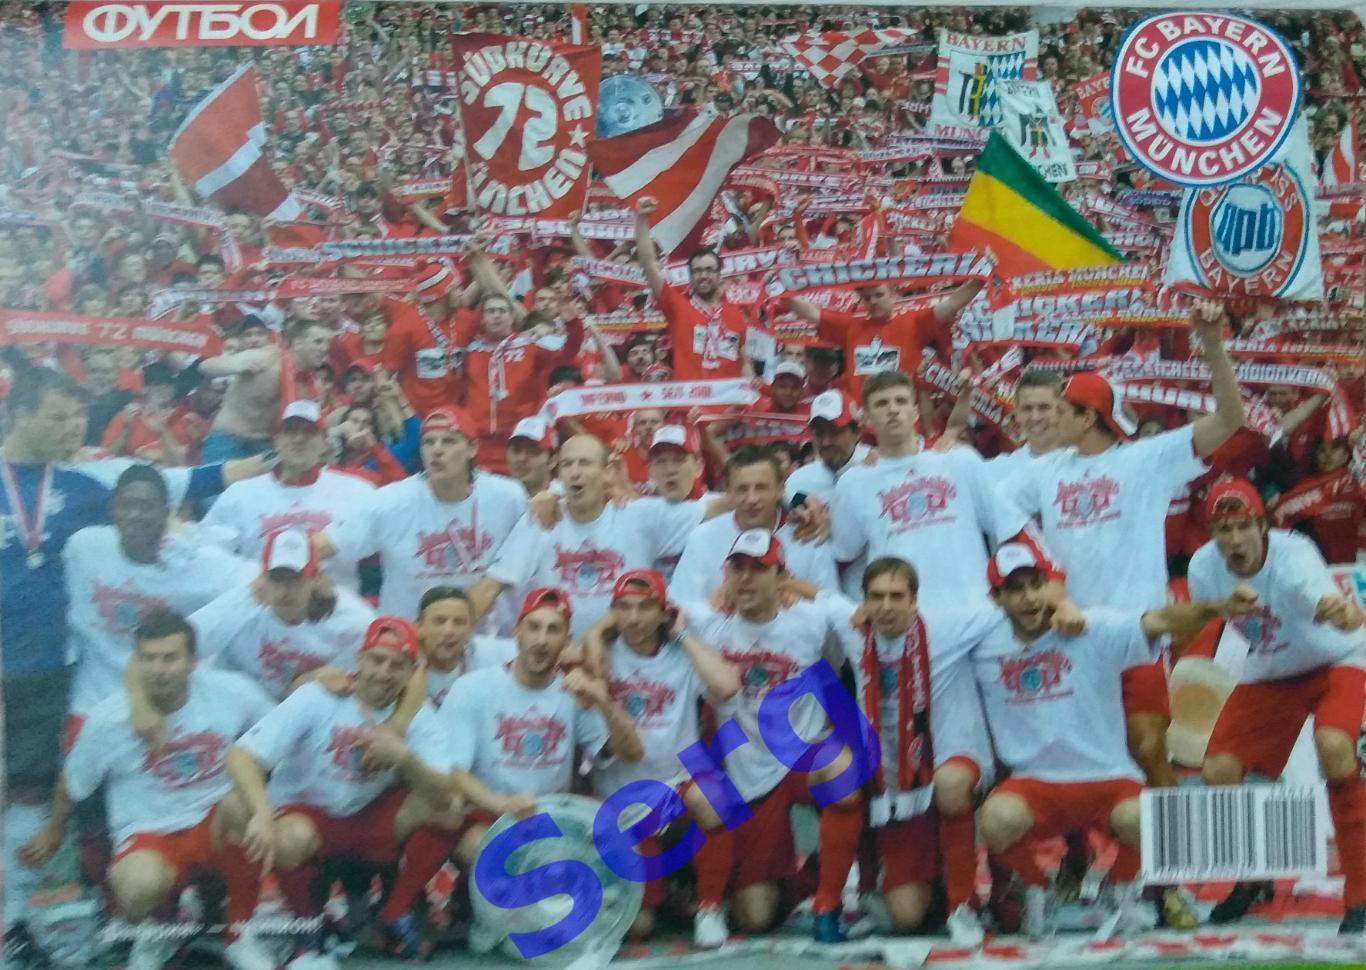 Спецвыпуск Великие клубы Бавария Мюнхен №12 2010 г. еженедельник Футбол 6